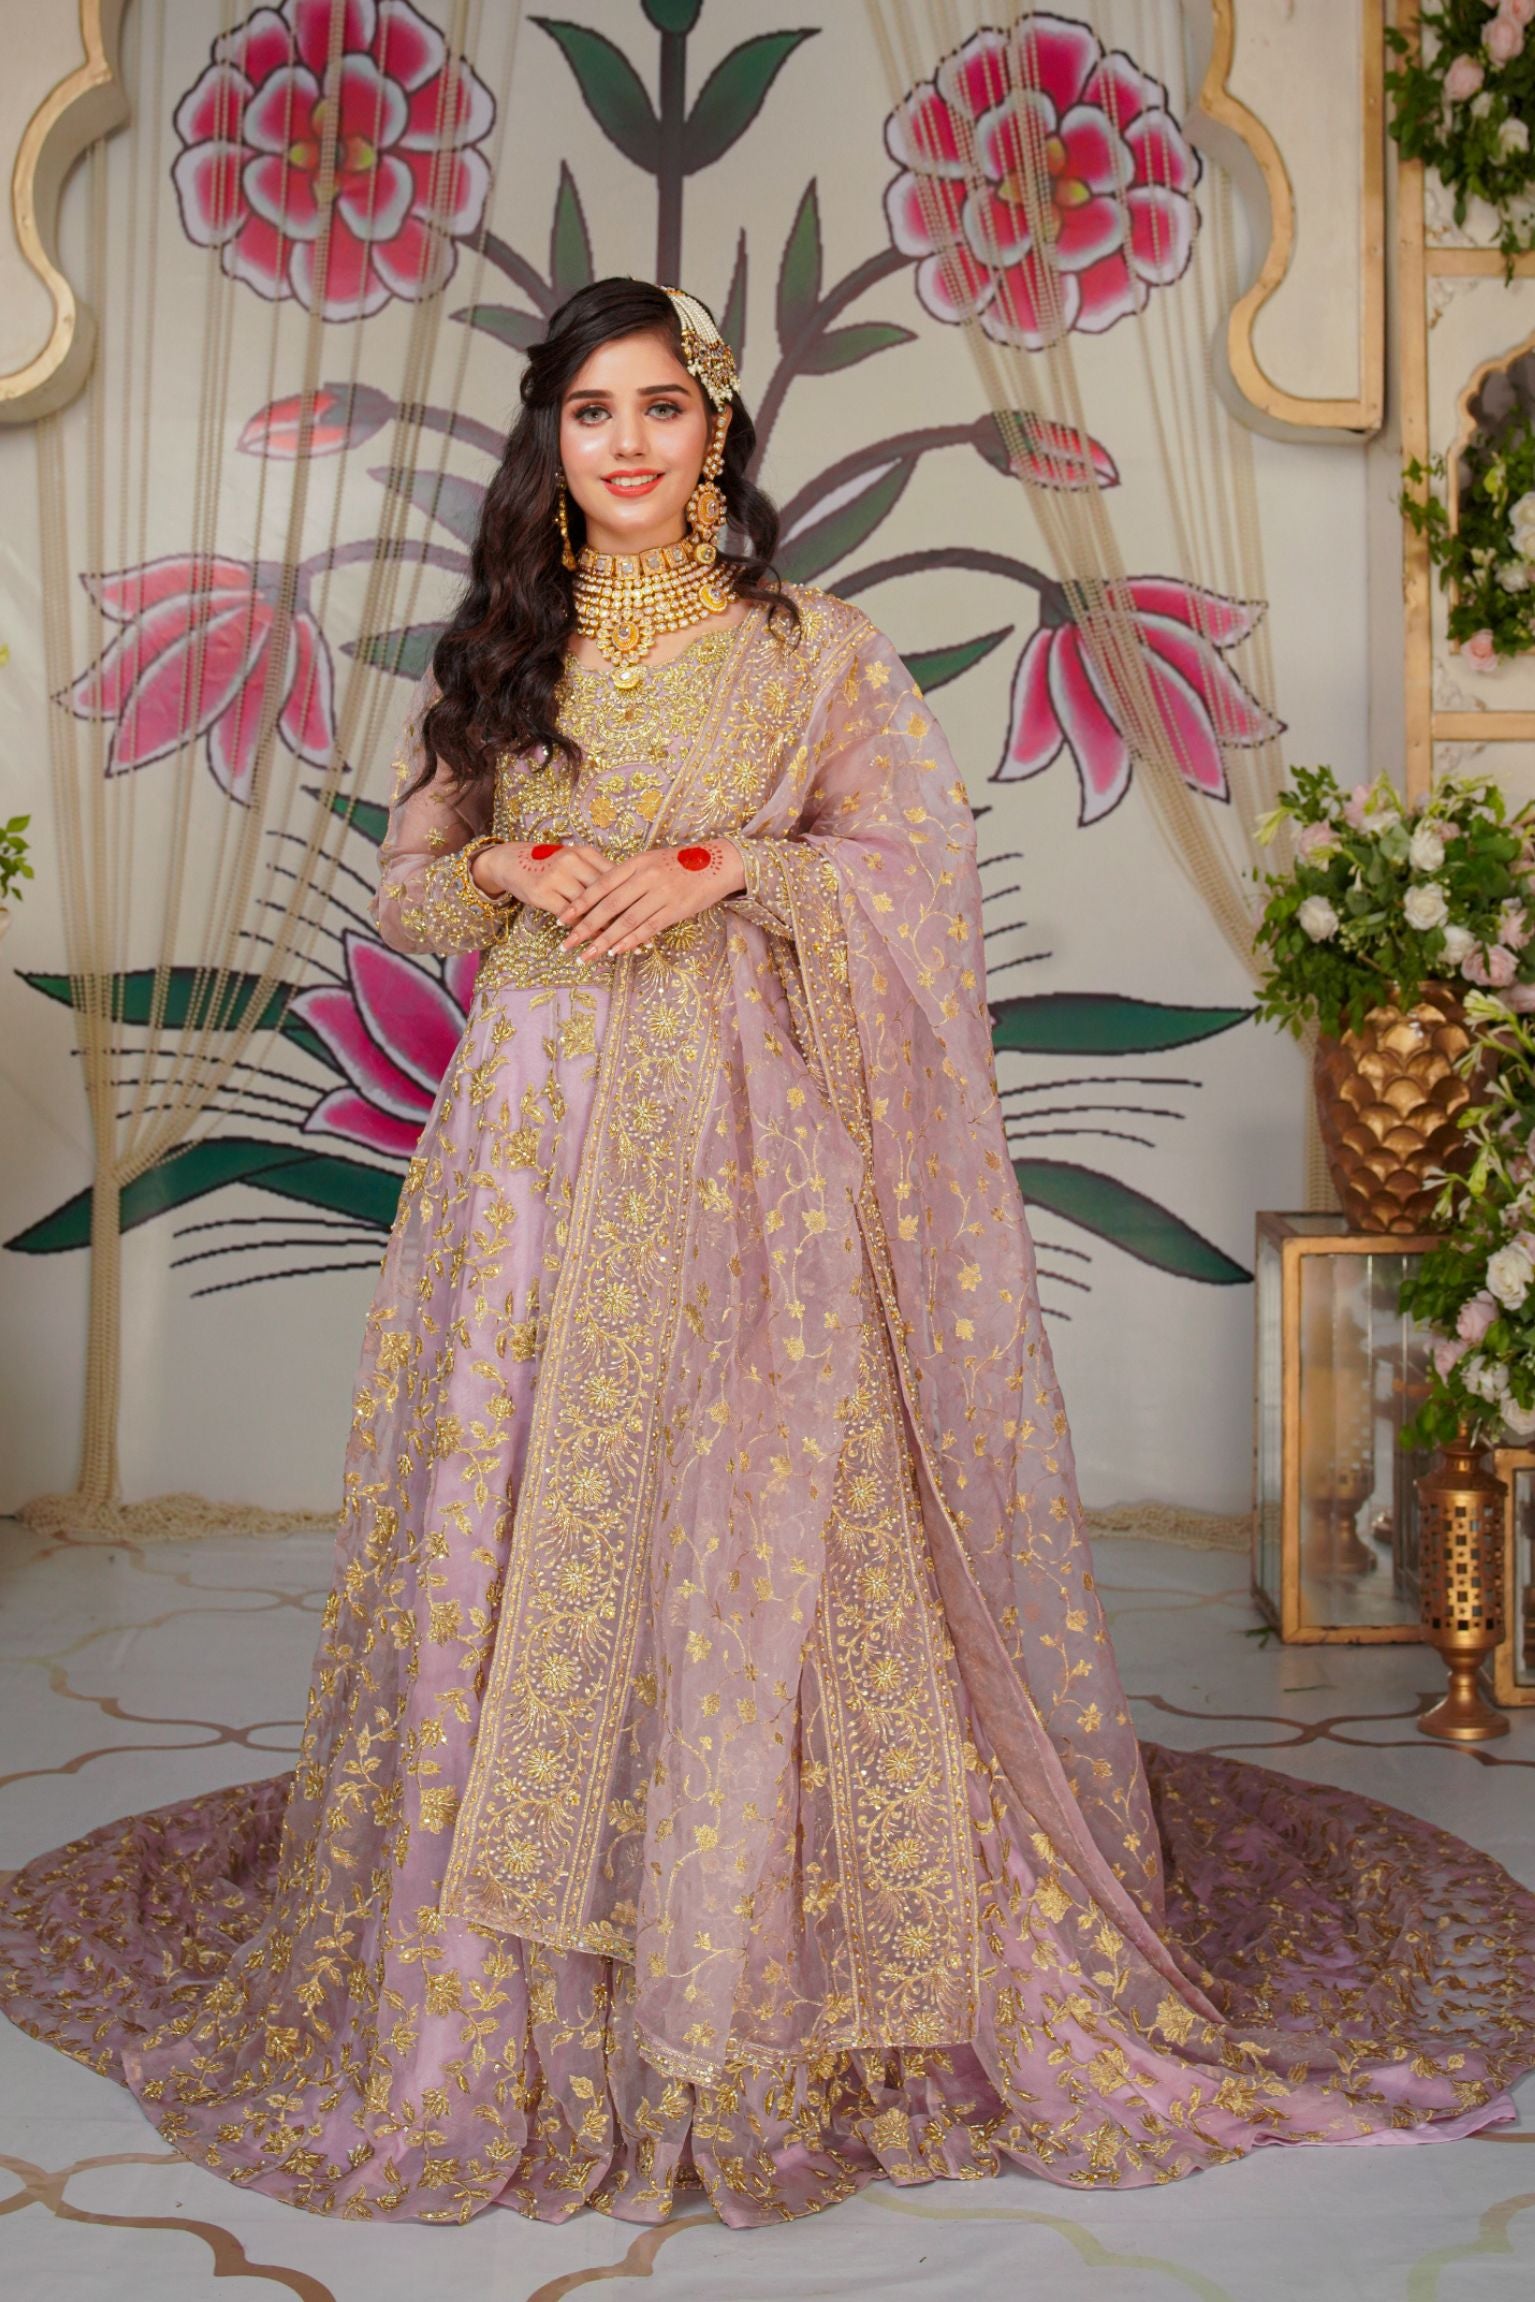 Asian Pakistani Indian Bridal Wedding Walima Dress Lehnga | eBay